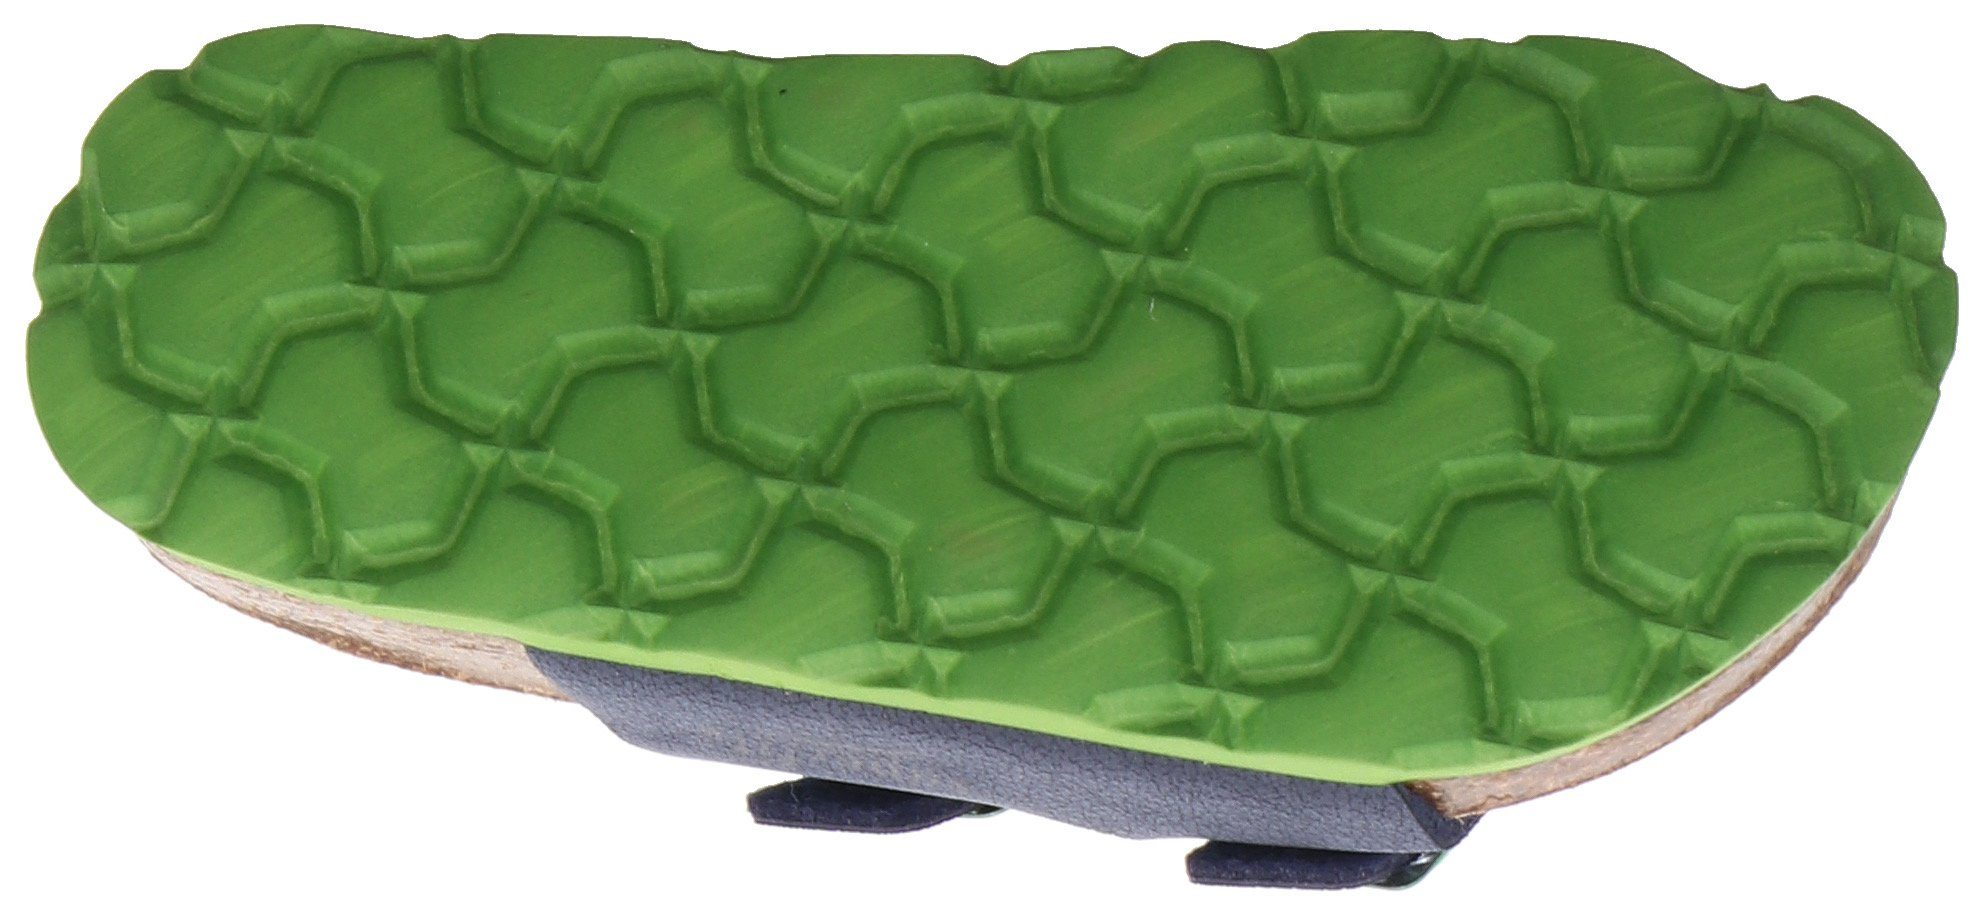 mit blau-grün verstellen Fußbettpantolette zum Superfit Pantolette Mittel WMS: Schnallen